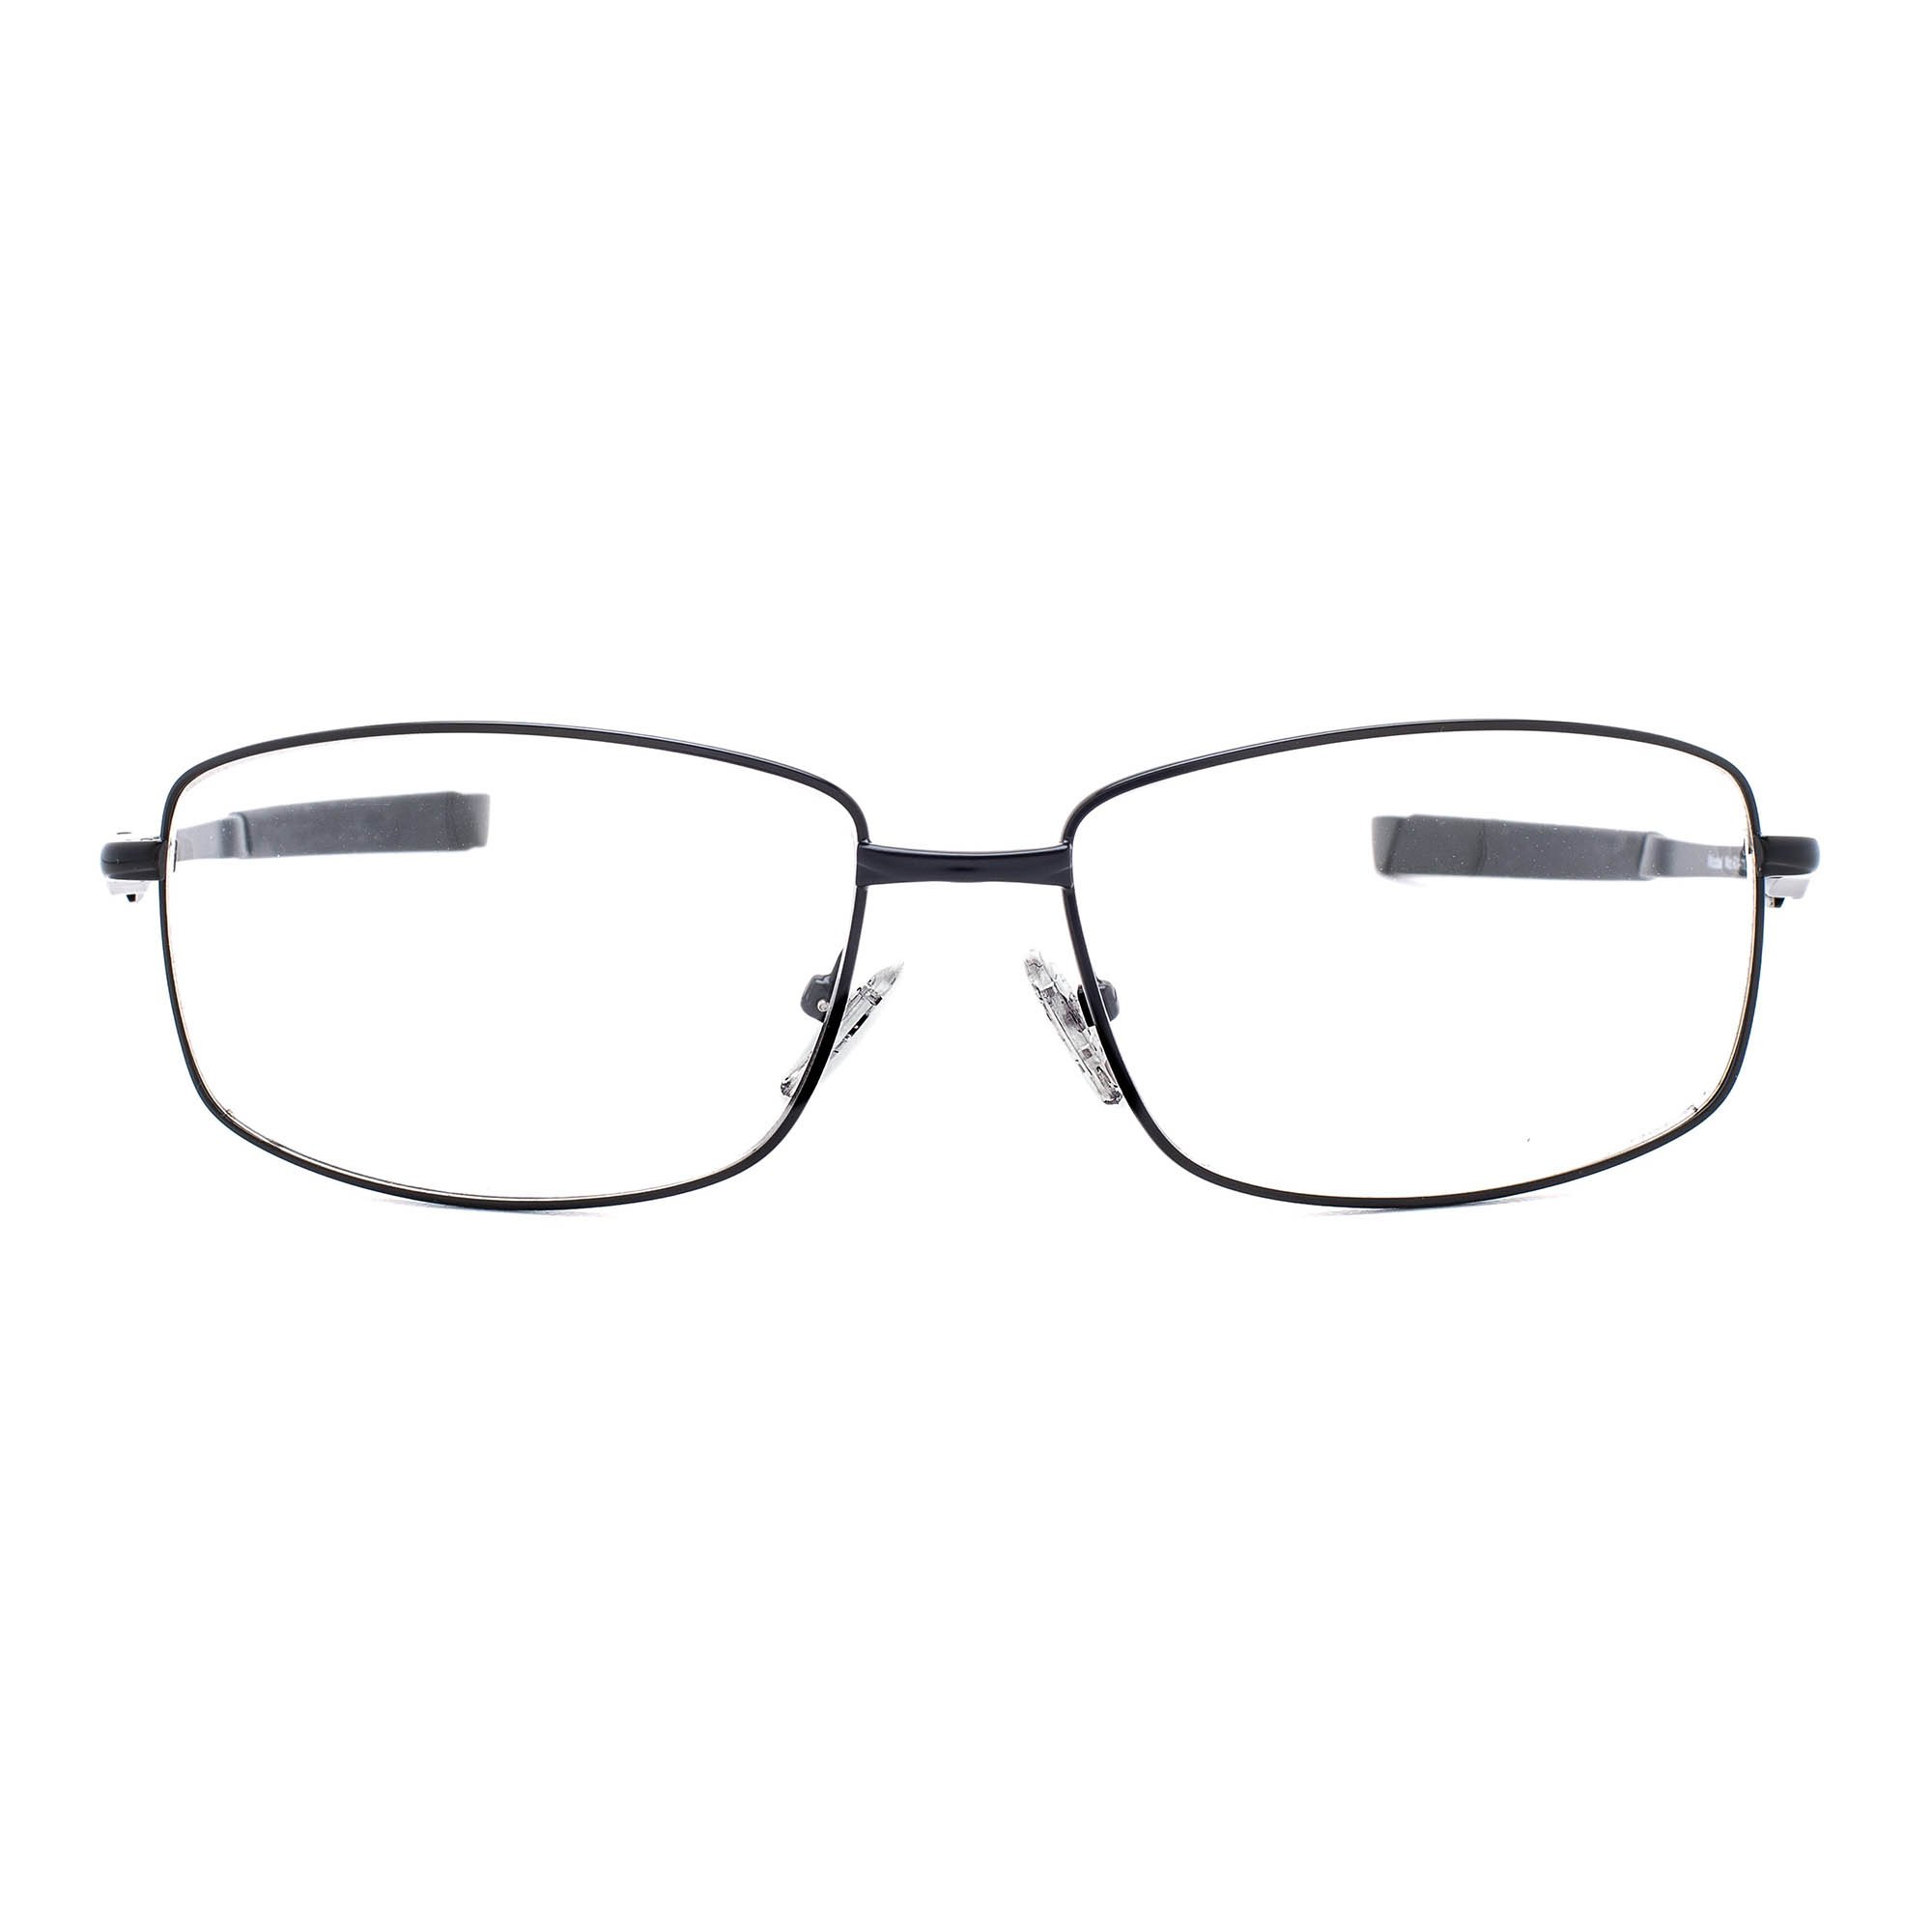 Metal Wrap Around Radiation Glasses Protection Eyewear RG-116